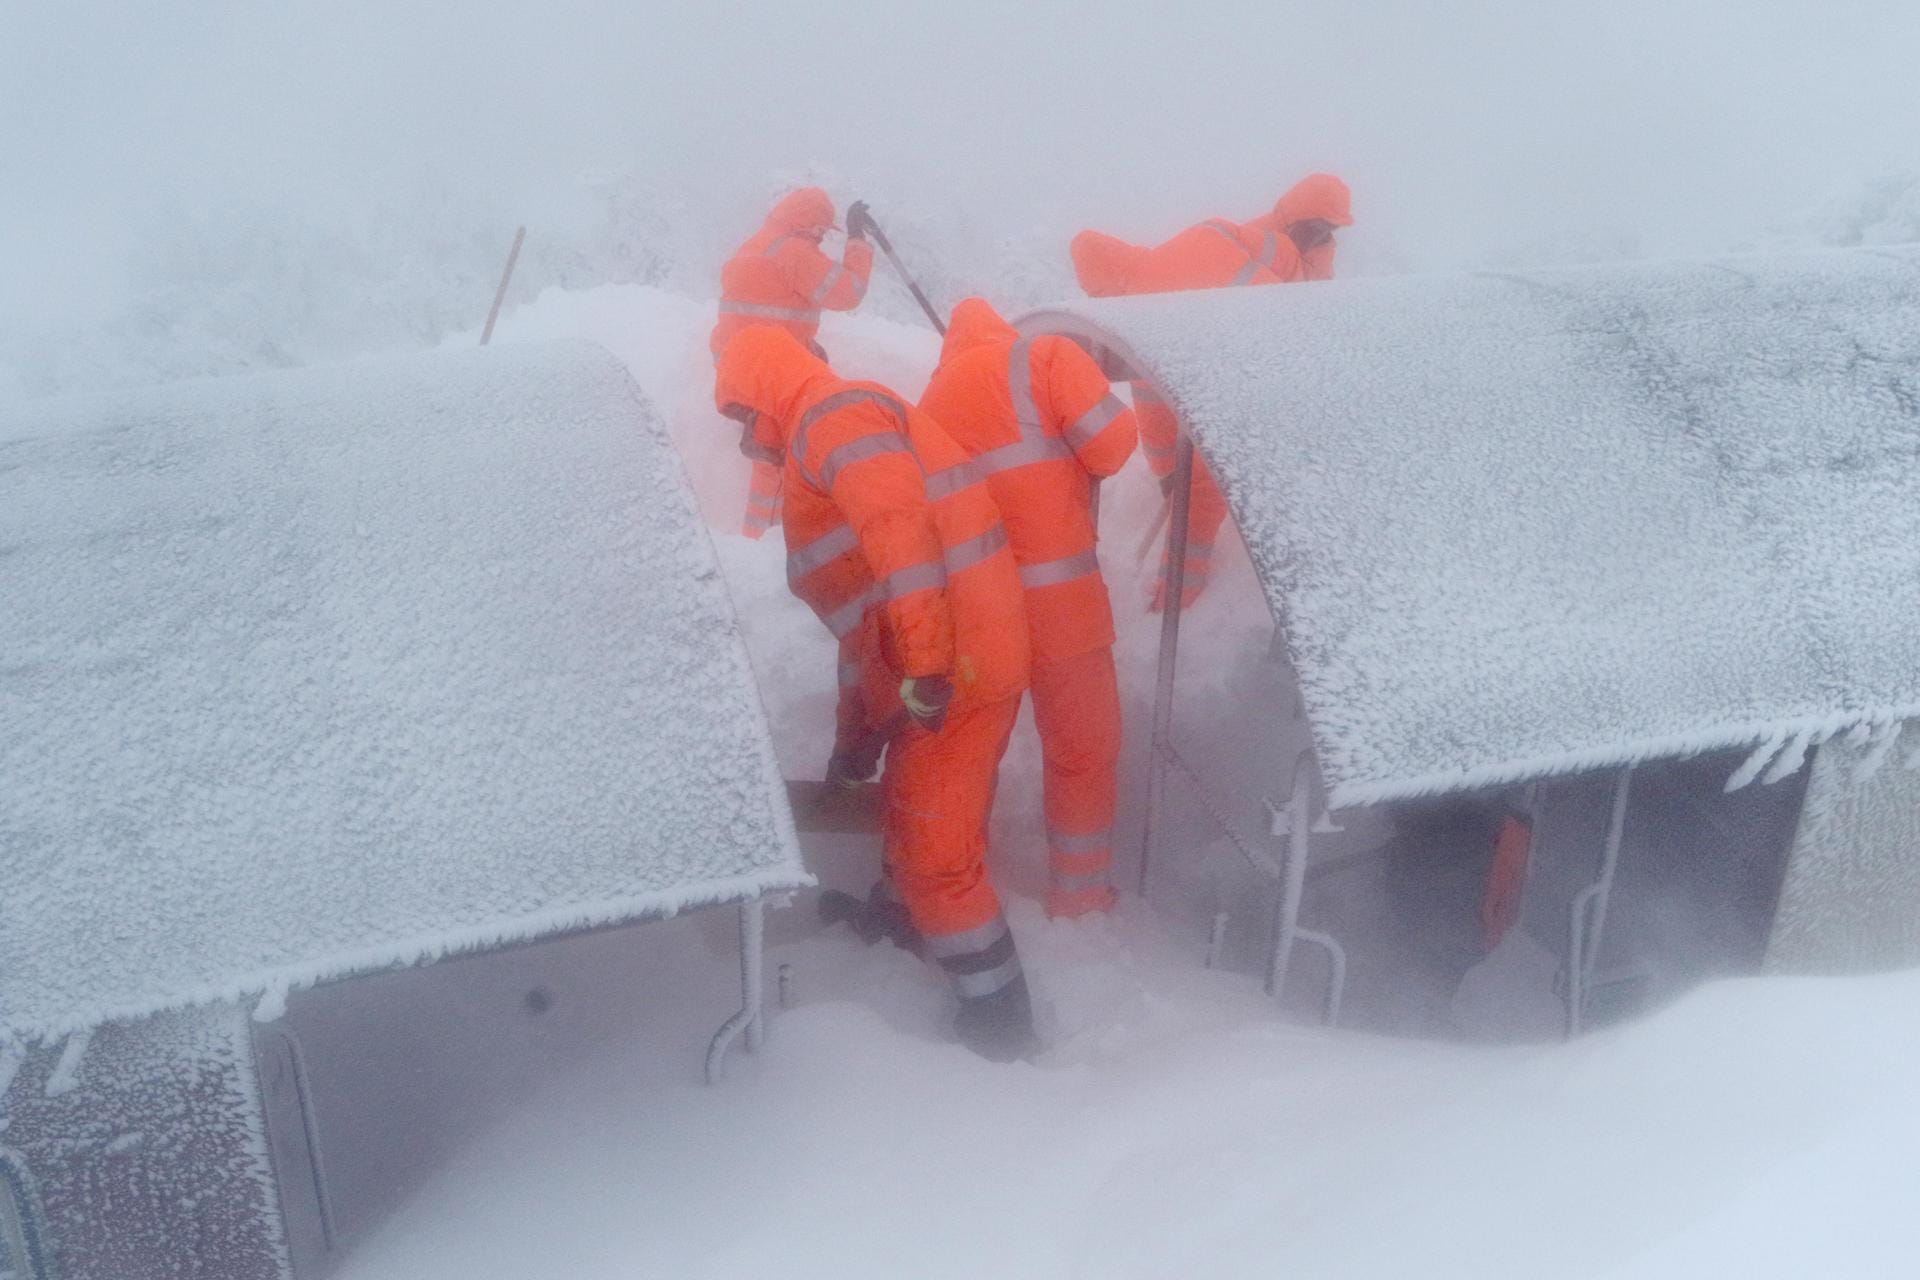 Arbeiter befreien die Harzer Schmalspurbahn zum Brocken von der Schneewehe, in der sie feststeckt.